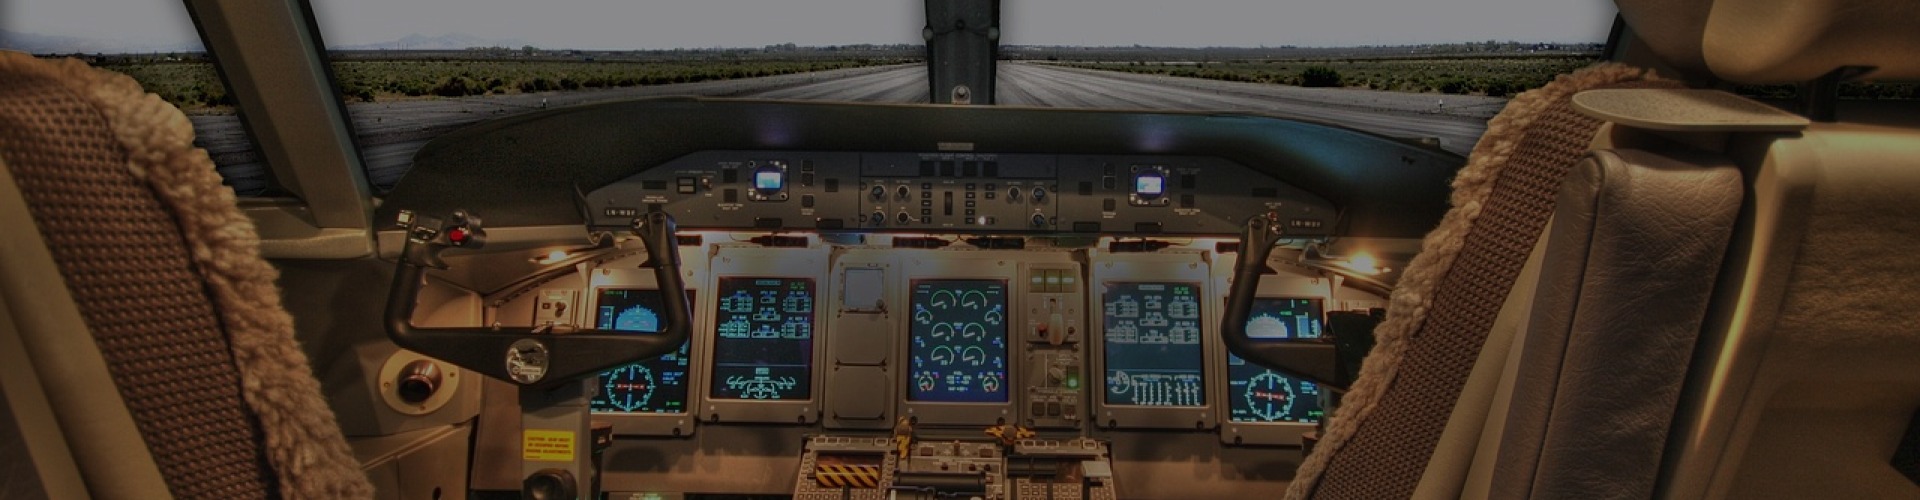 Simulateur de Vol en PACA et Corse